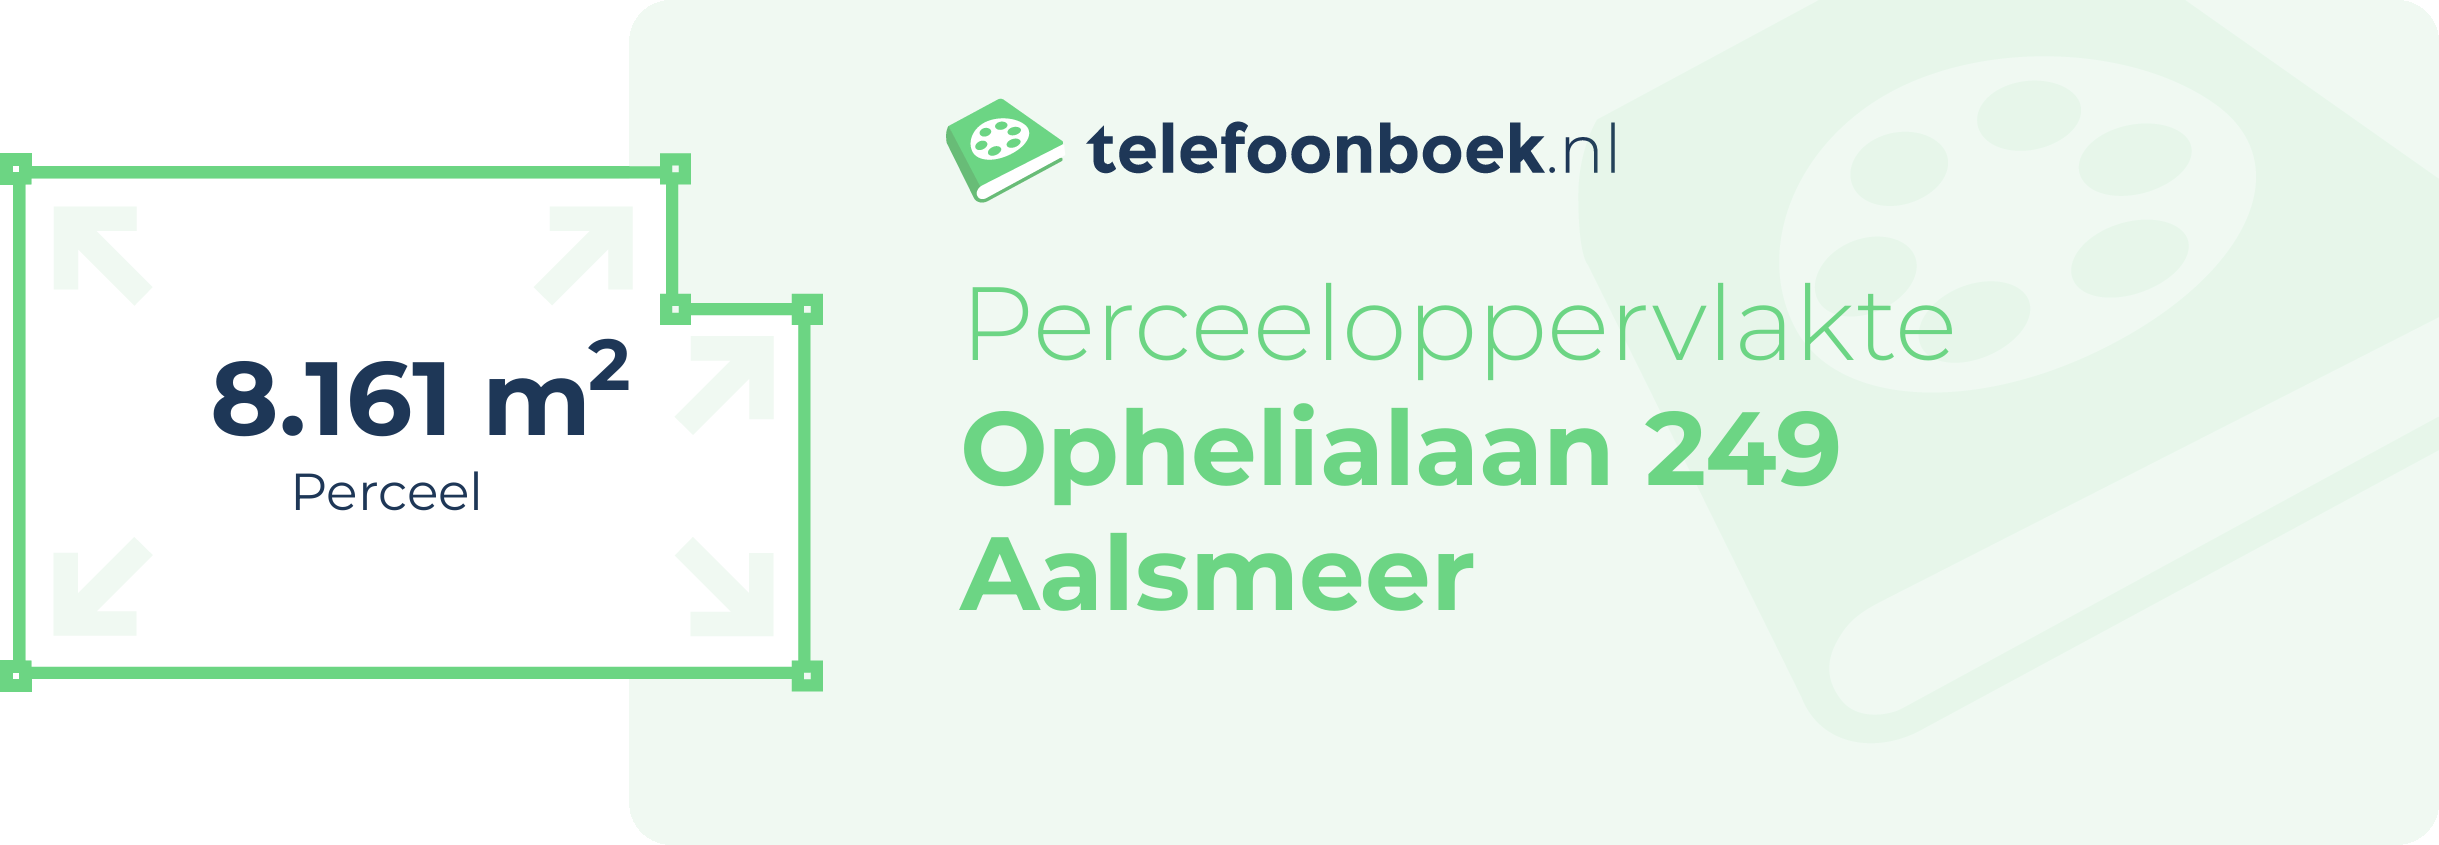 Perceeloppervlakte Ophelialaan 249 Aalsmeer